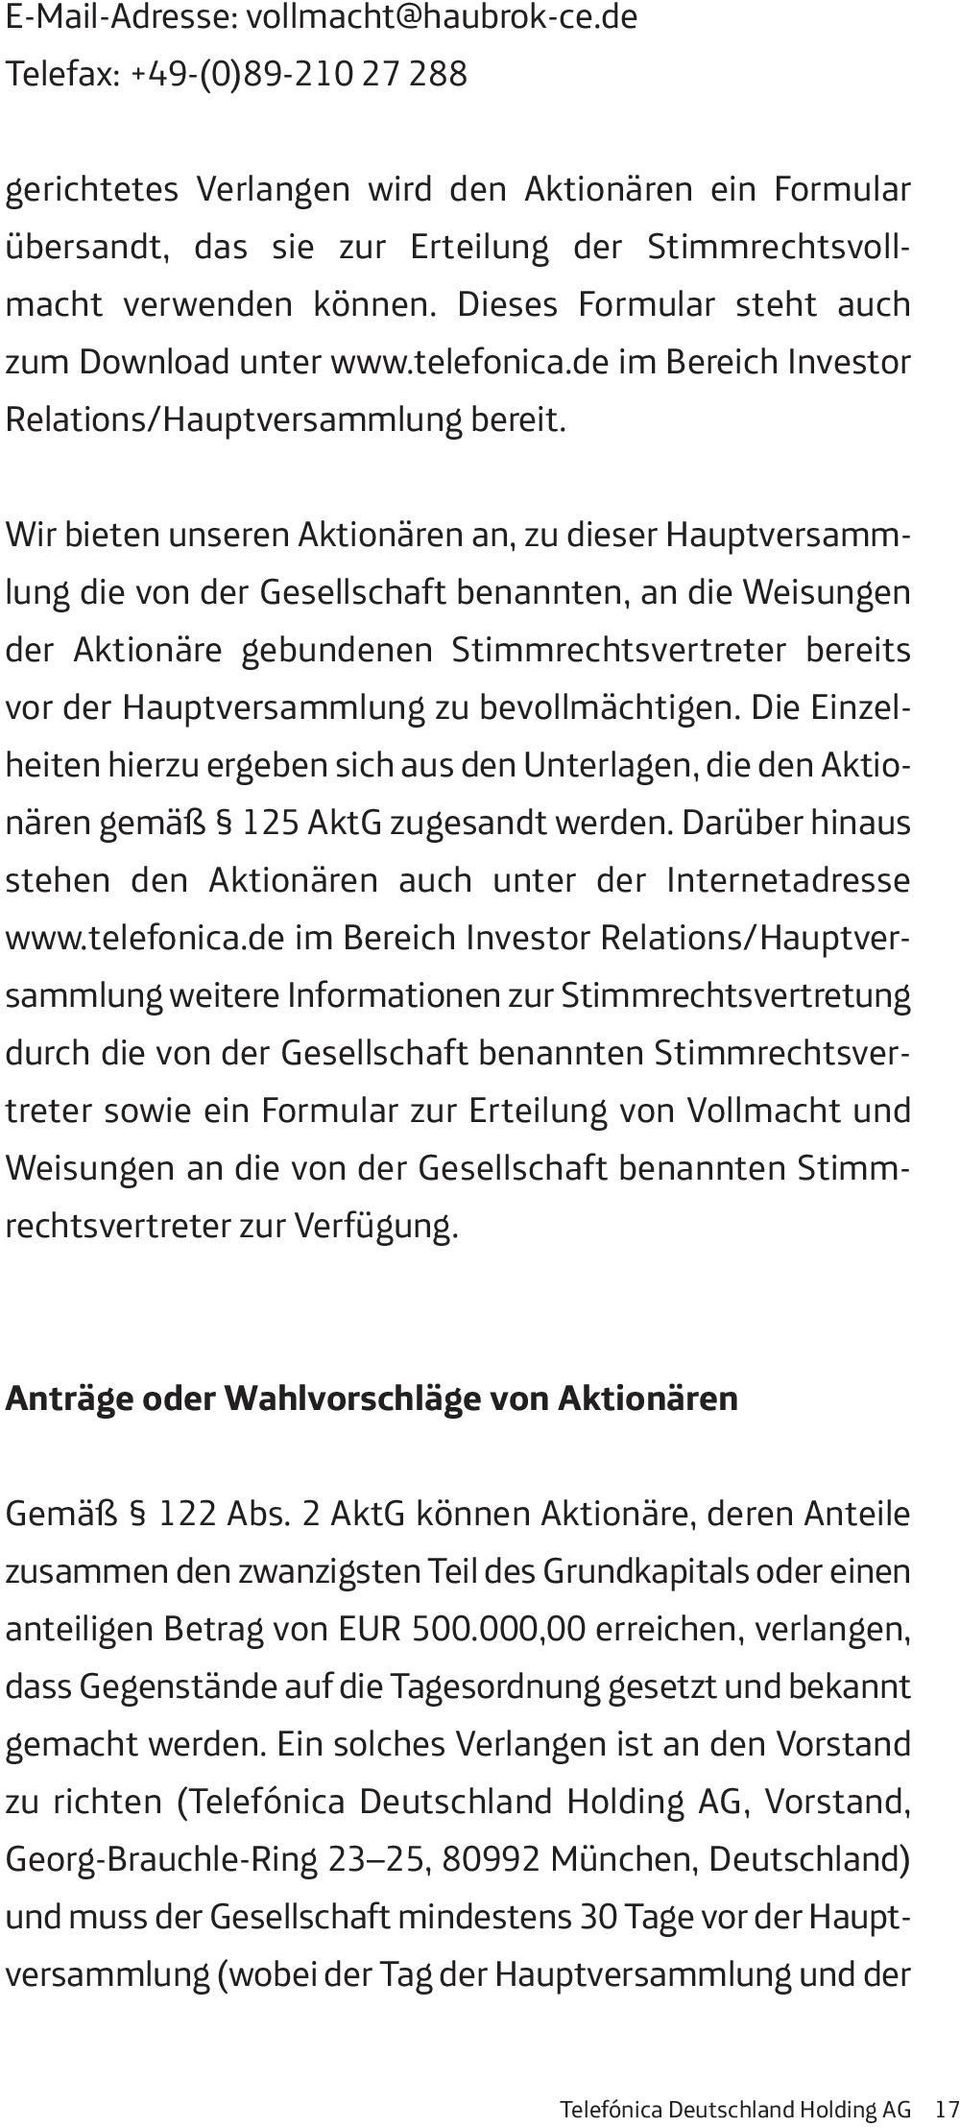 Dieses Formular steht auch zum Download unter www.telefonica.de im Bereich Investor Relations/Hauptversammlung bereit.